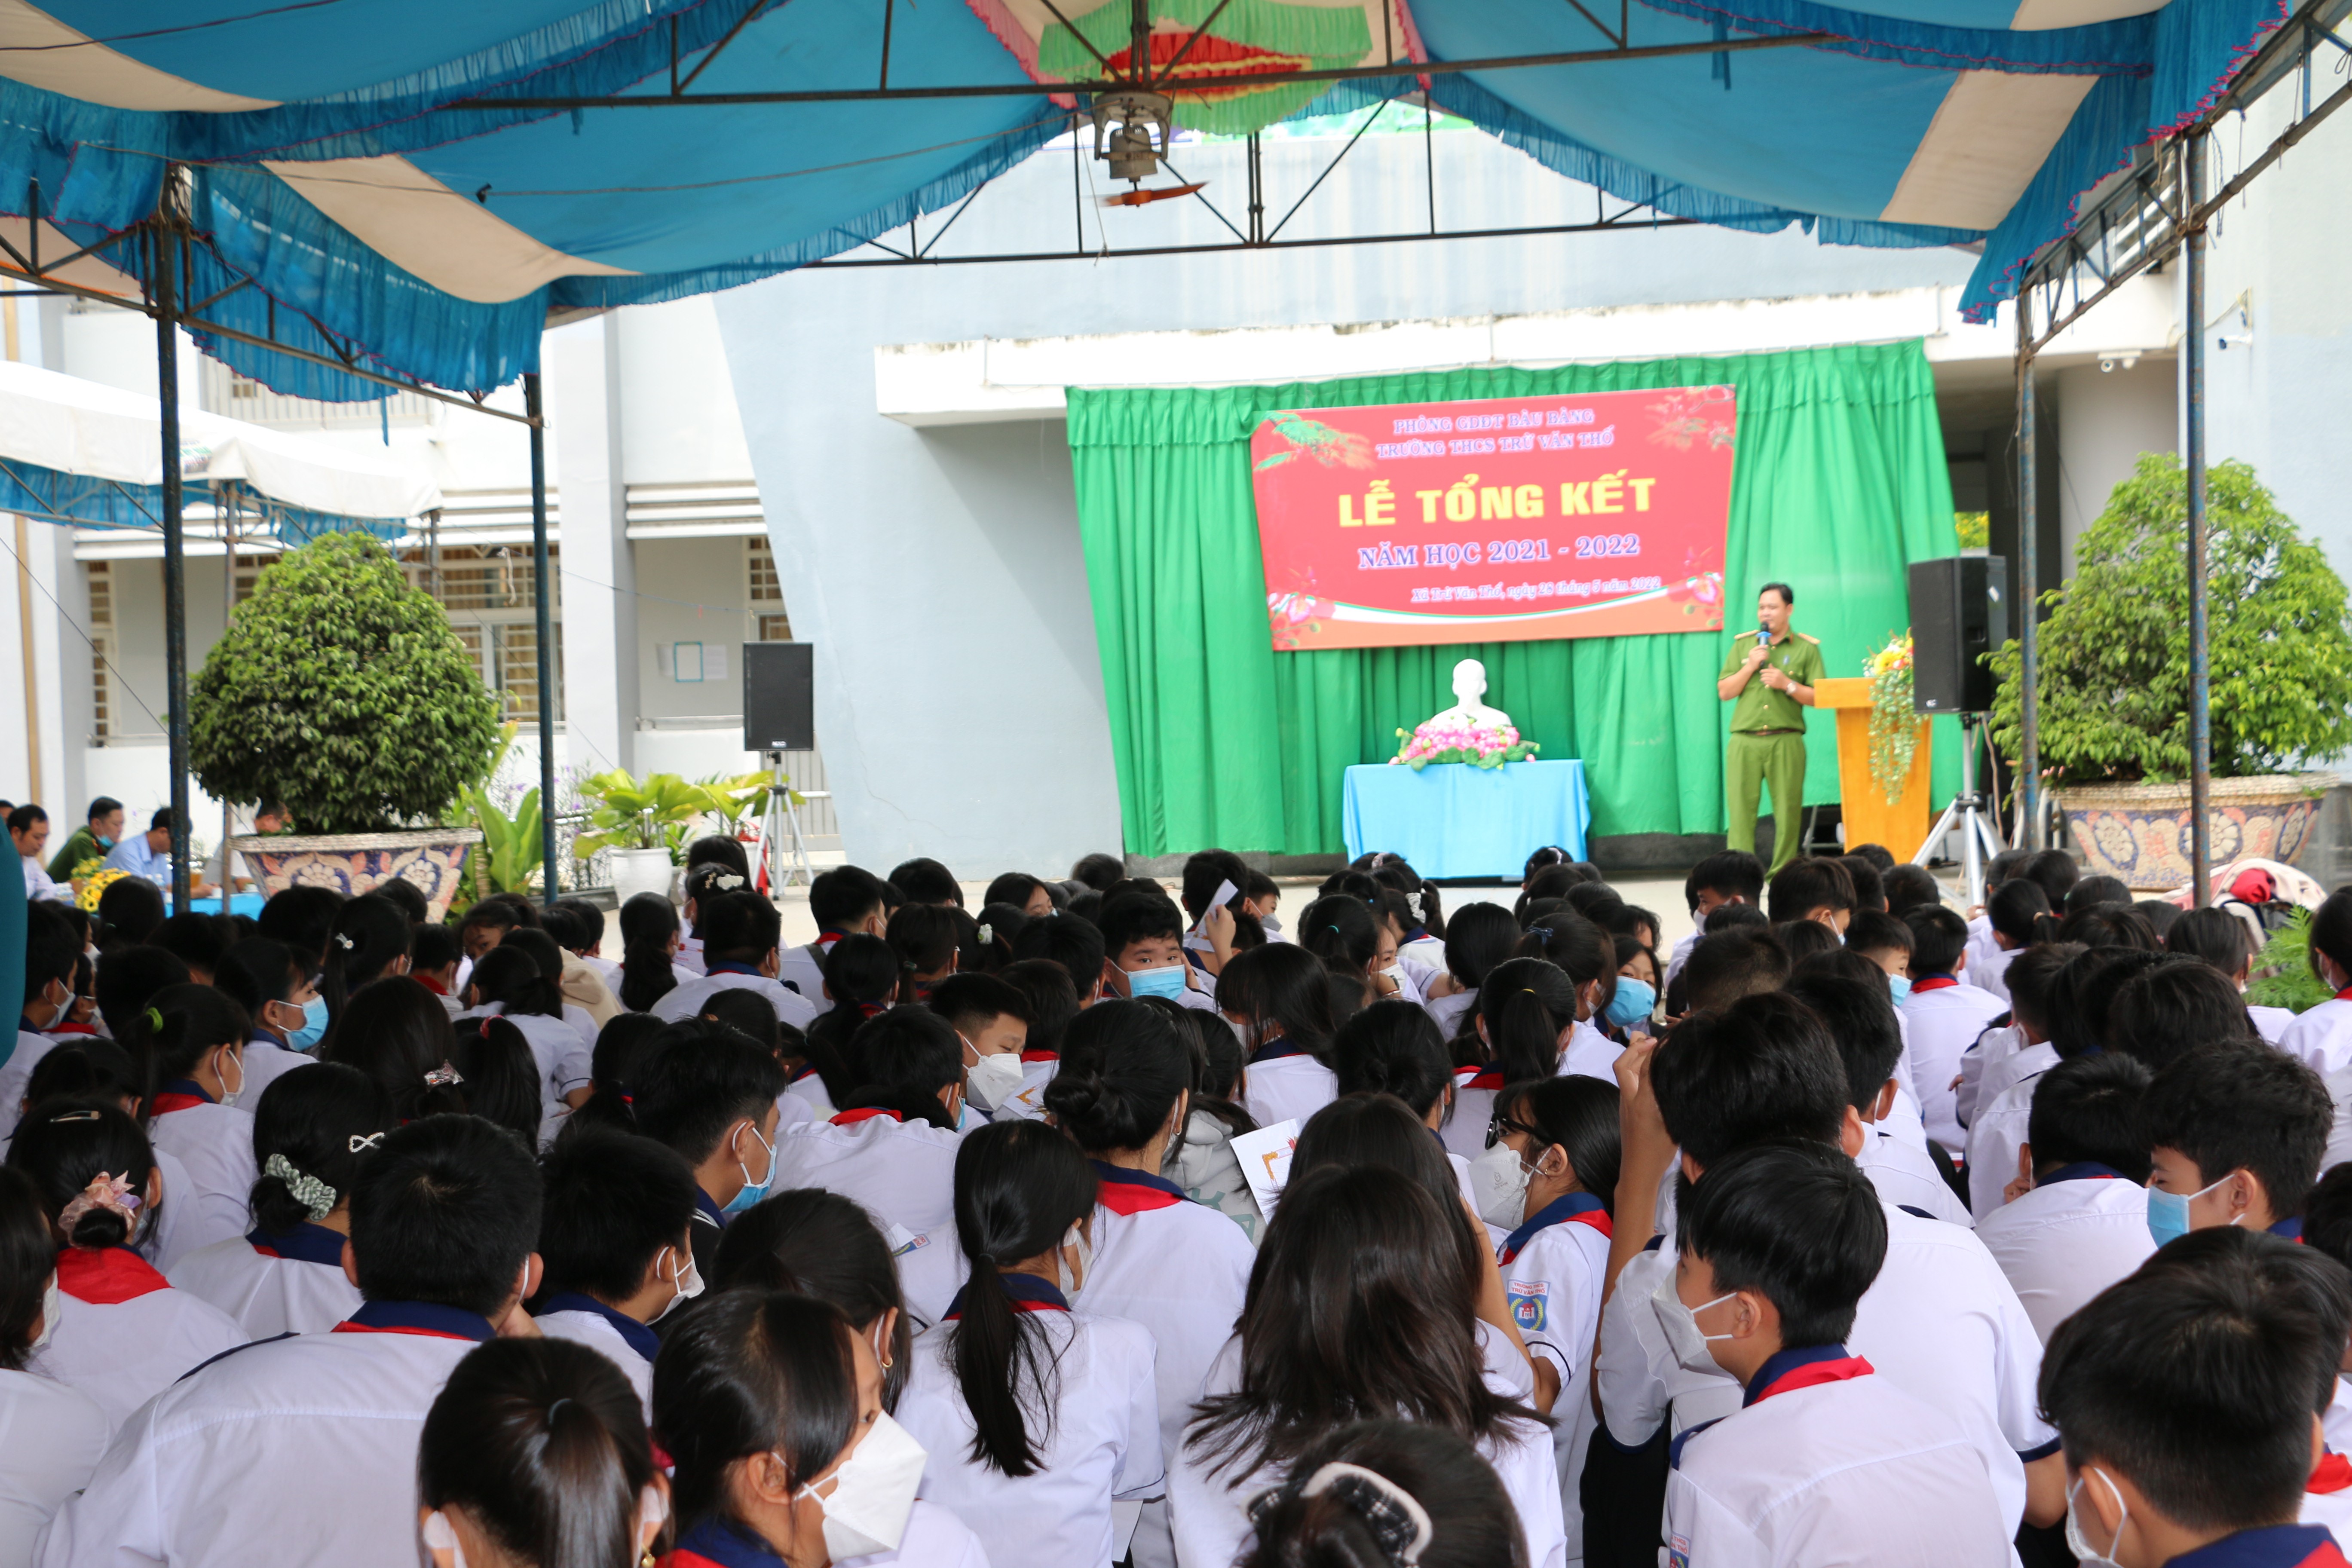 Đại úy Đoàn Công Huân – Phó đội trưởng Đội PCCC Công an huyện Bàu Bàng tuyên truyền phòng, chống đuối nước, phòng cháy chữa cháy hộ gia đình cho các em học sinh.